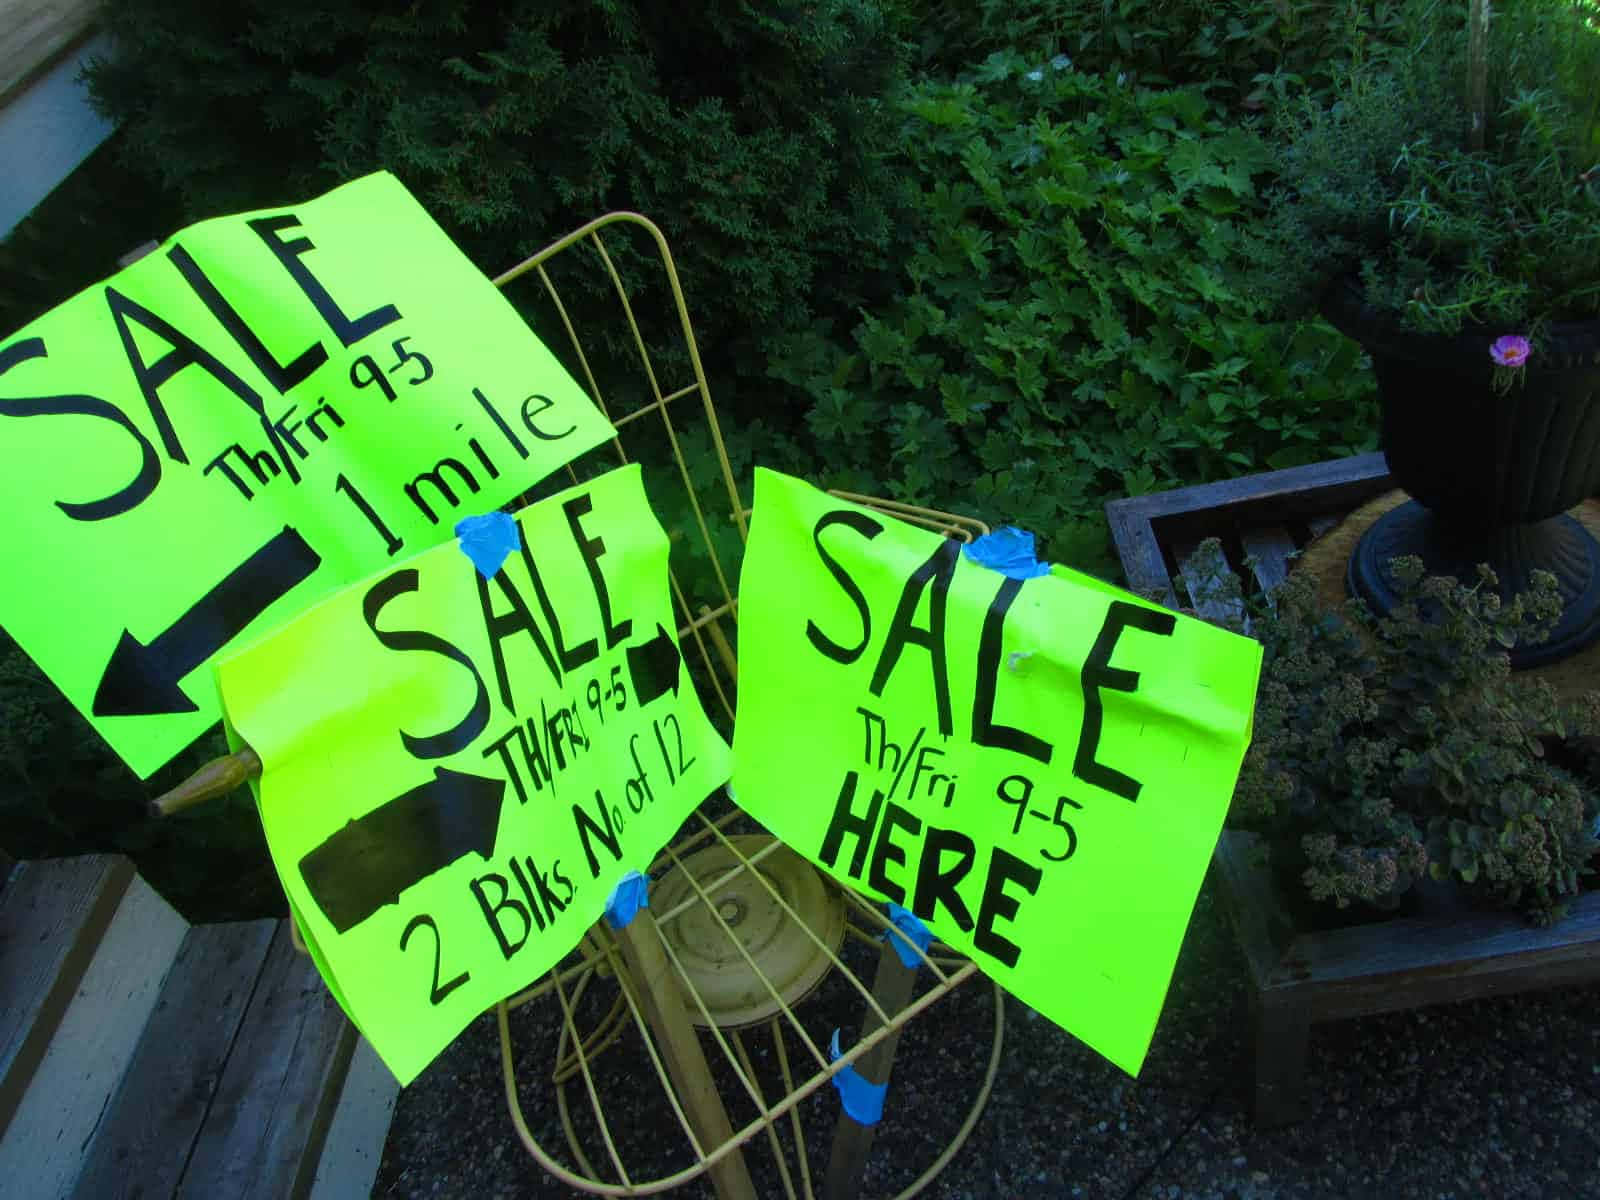 Exciting Neighborhood Yard Sale